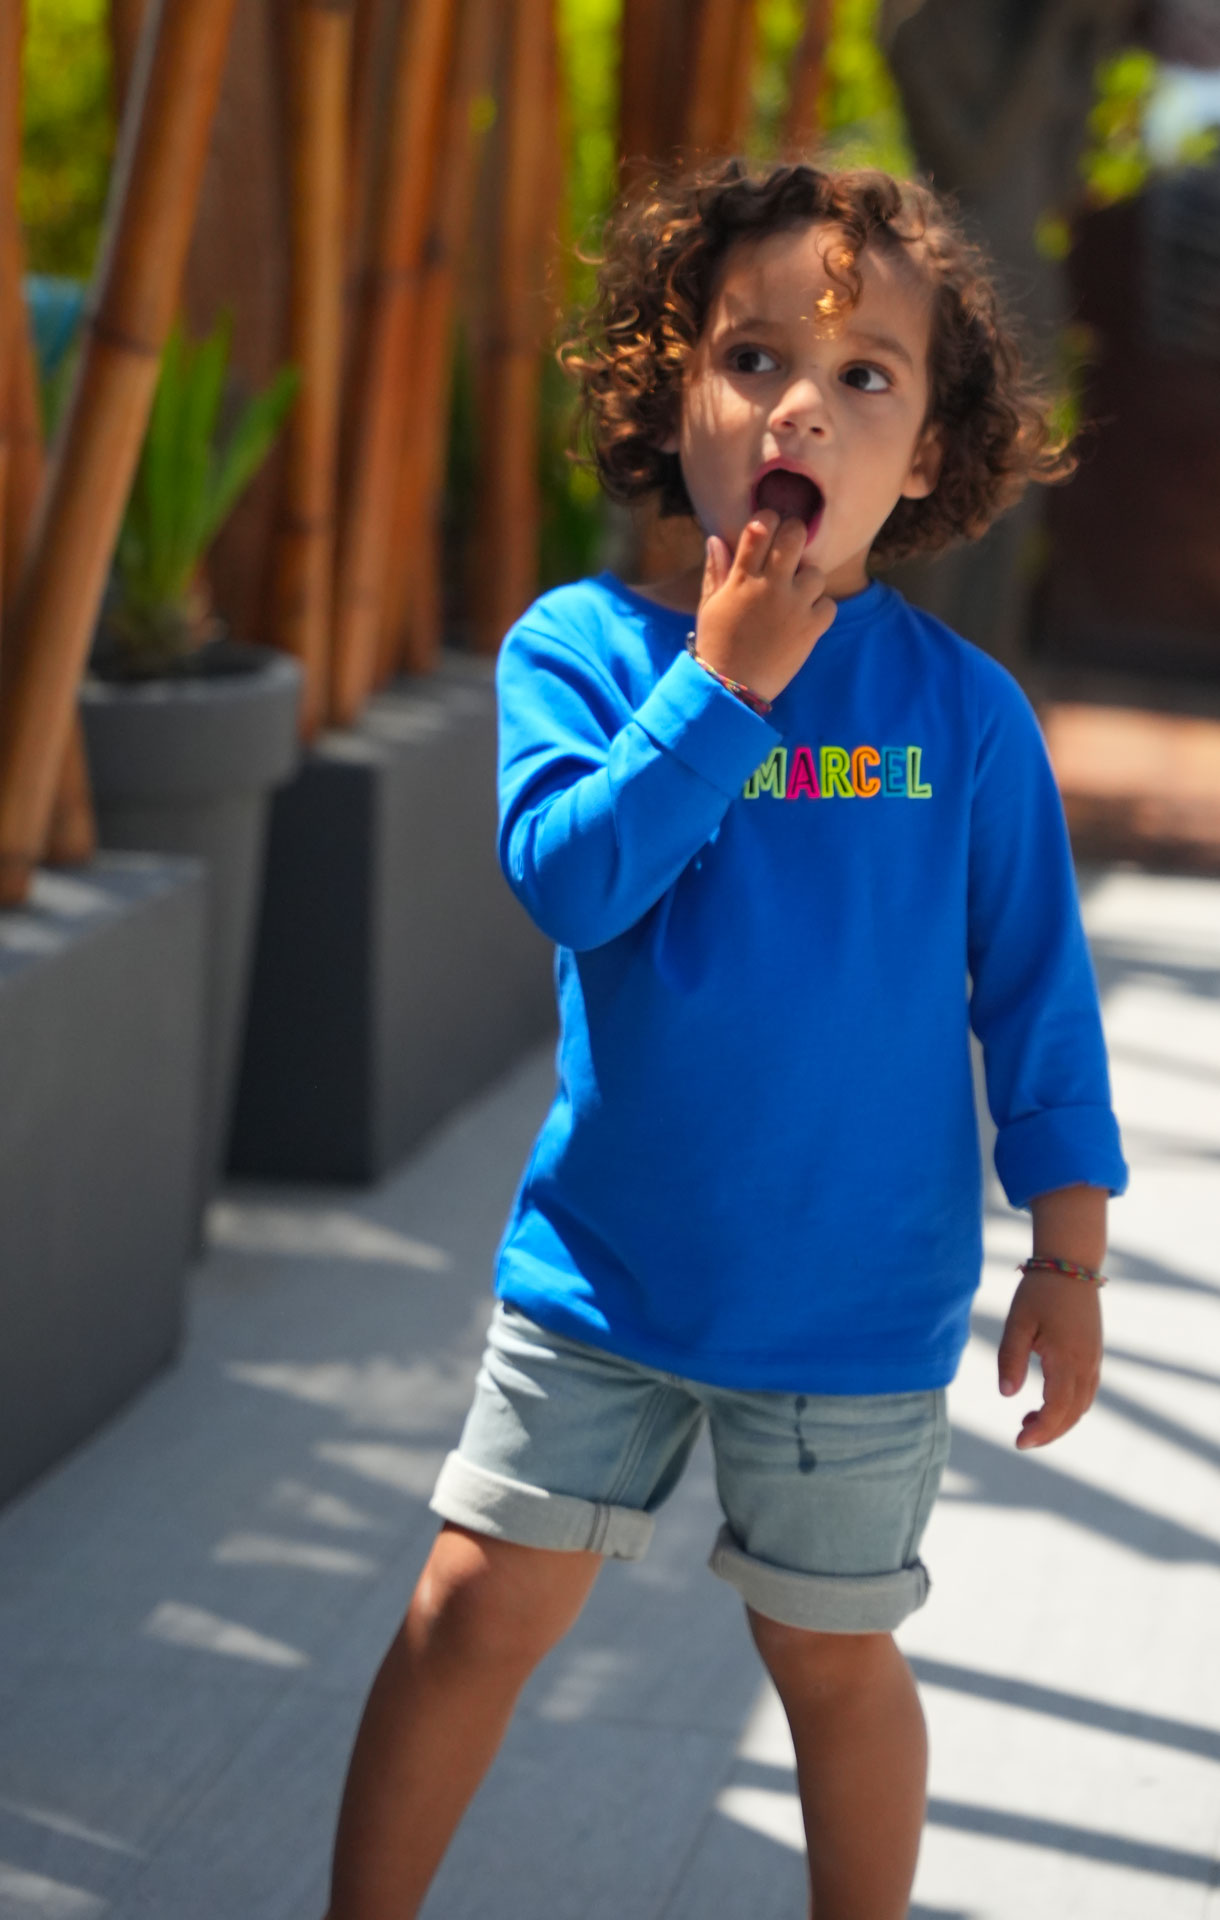 T-shirt Manches Longues Enfant Garcon et Fille Tee Shirt en Coton